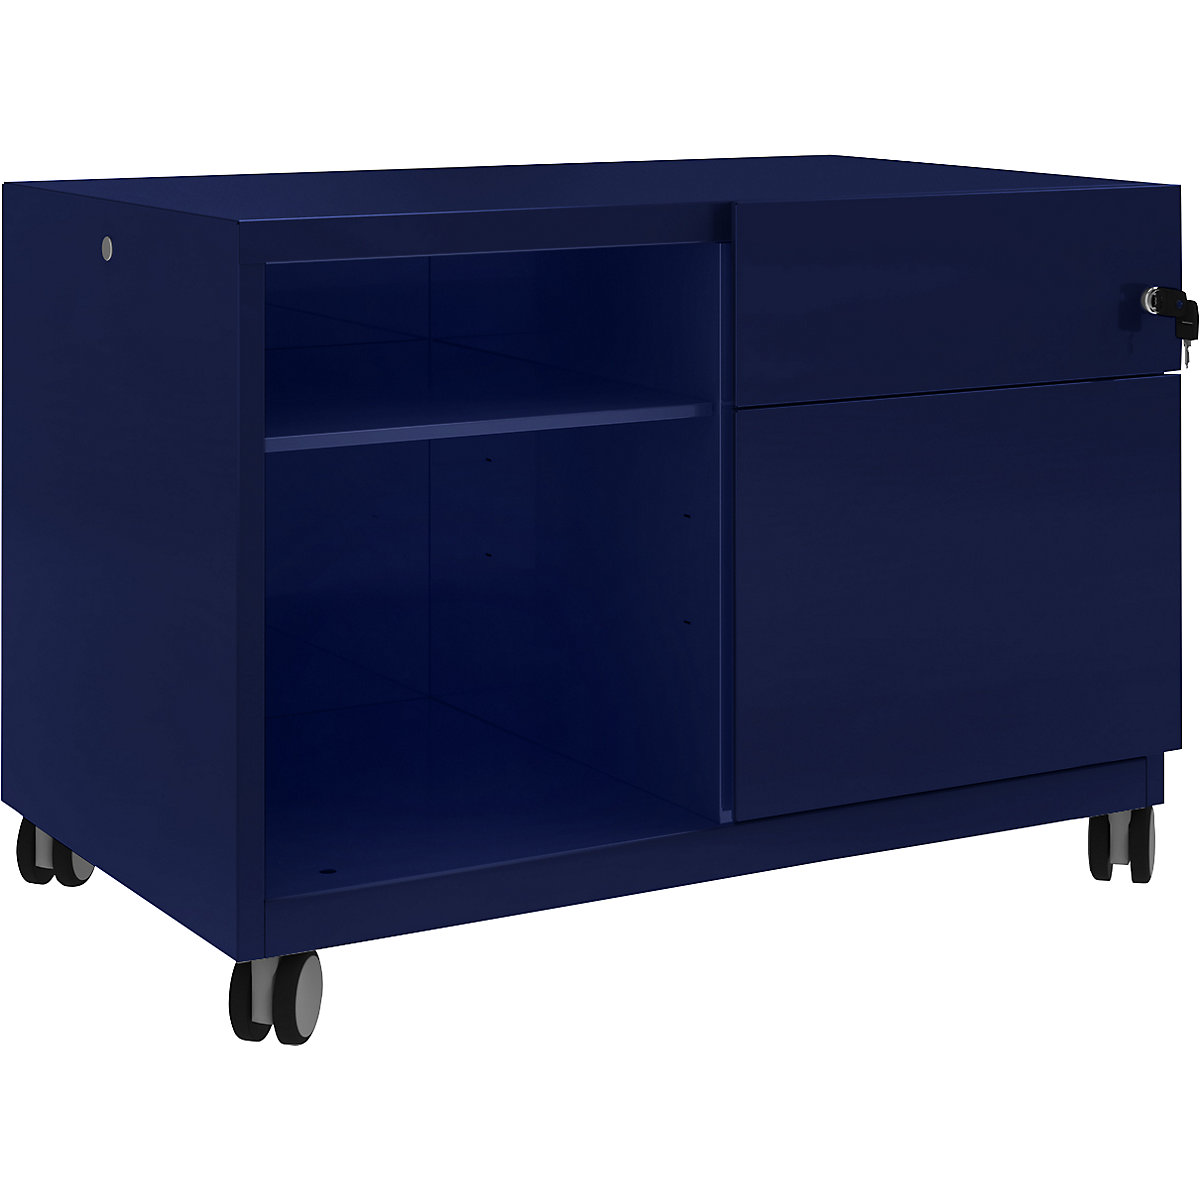 Note™ CADDY, H x A x P 563 x 800 x 490 mm – BISLEY, a la derecha 1 cajón universal y archivador colgante, azul oxford-17